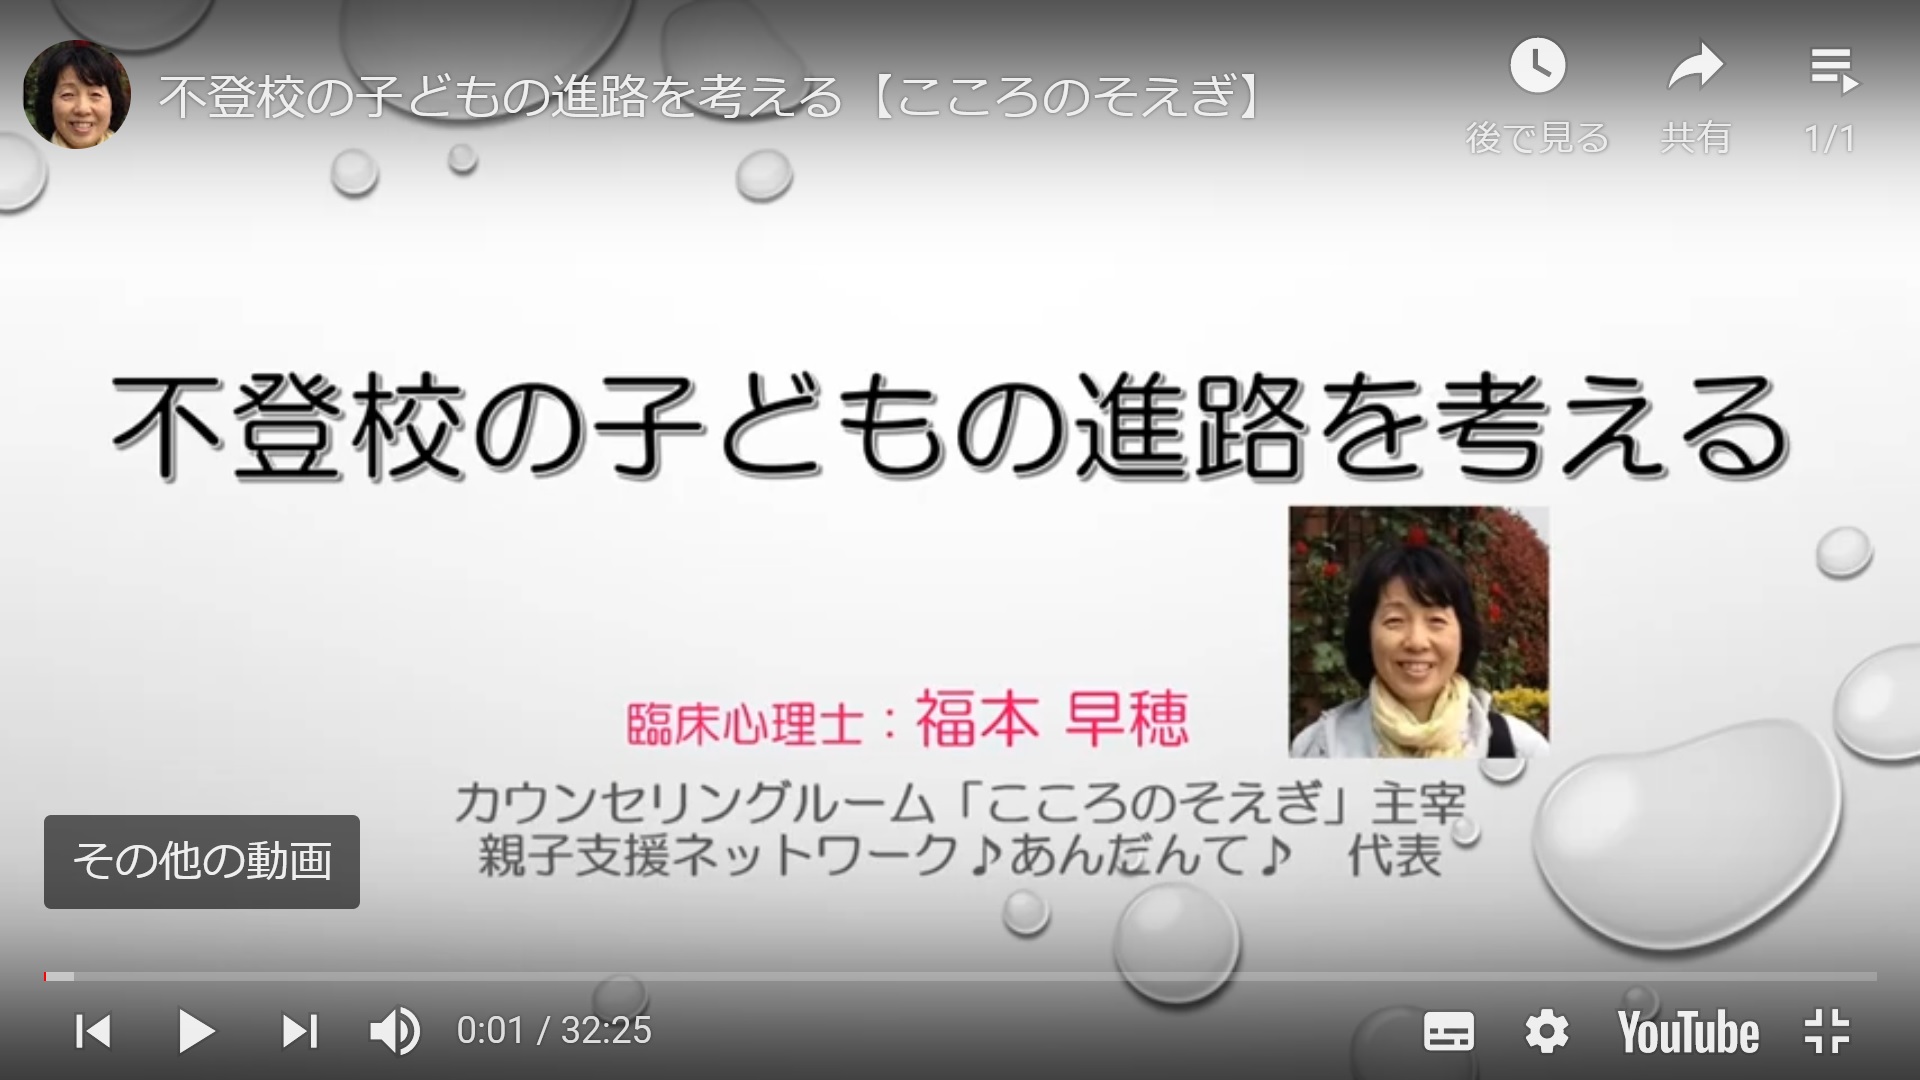 『不登校からの進路選択』の著者 福本早穂さんが内容を動画で公開